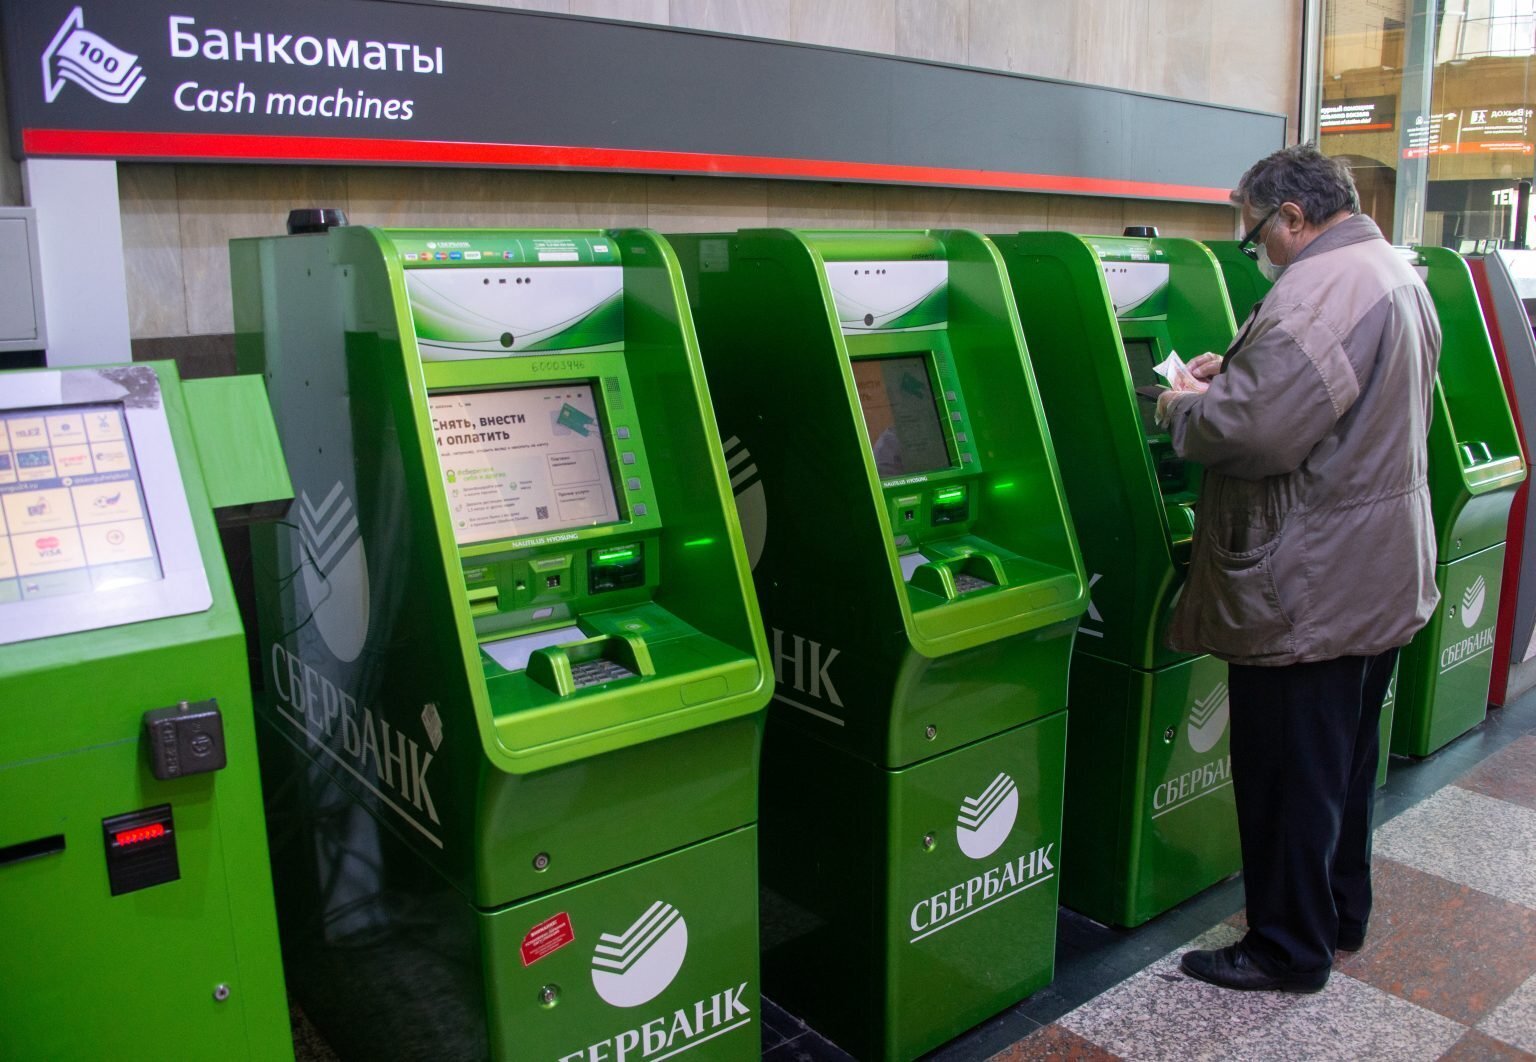 Стоит ли брать деньги, забытые кем-то в банкомате?